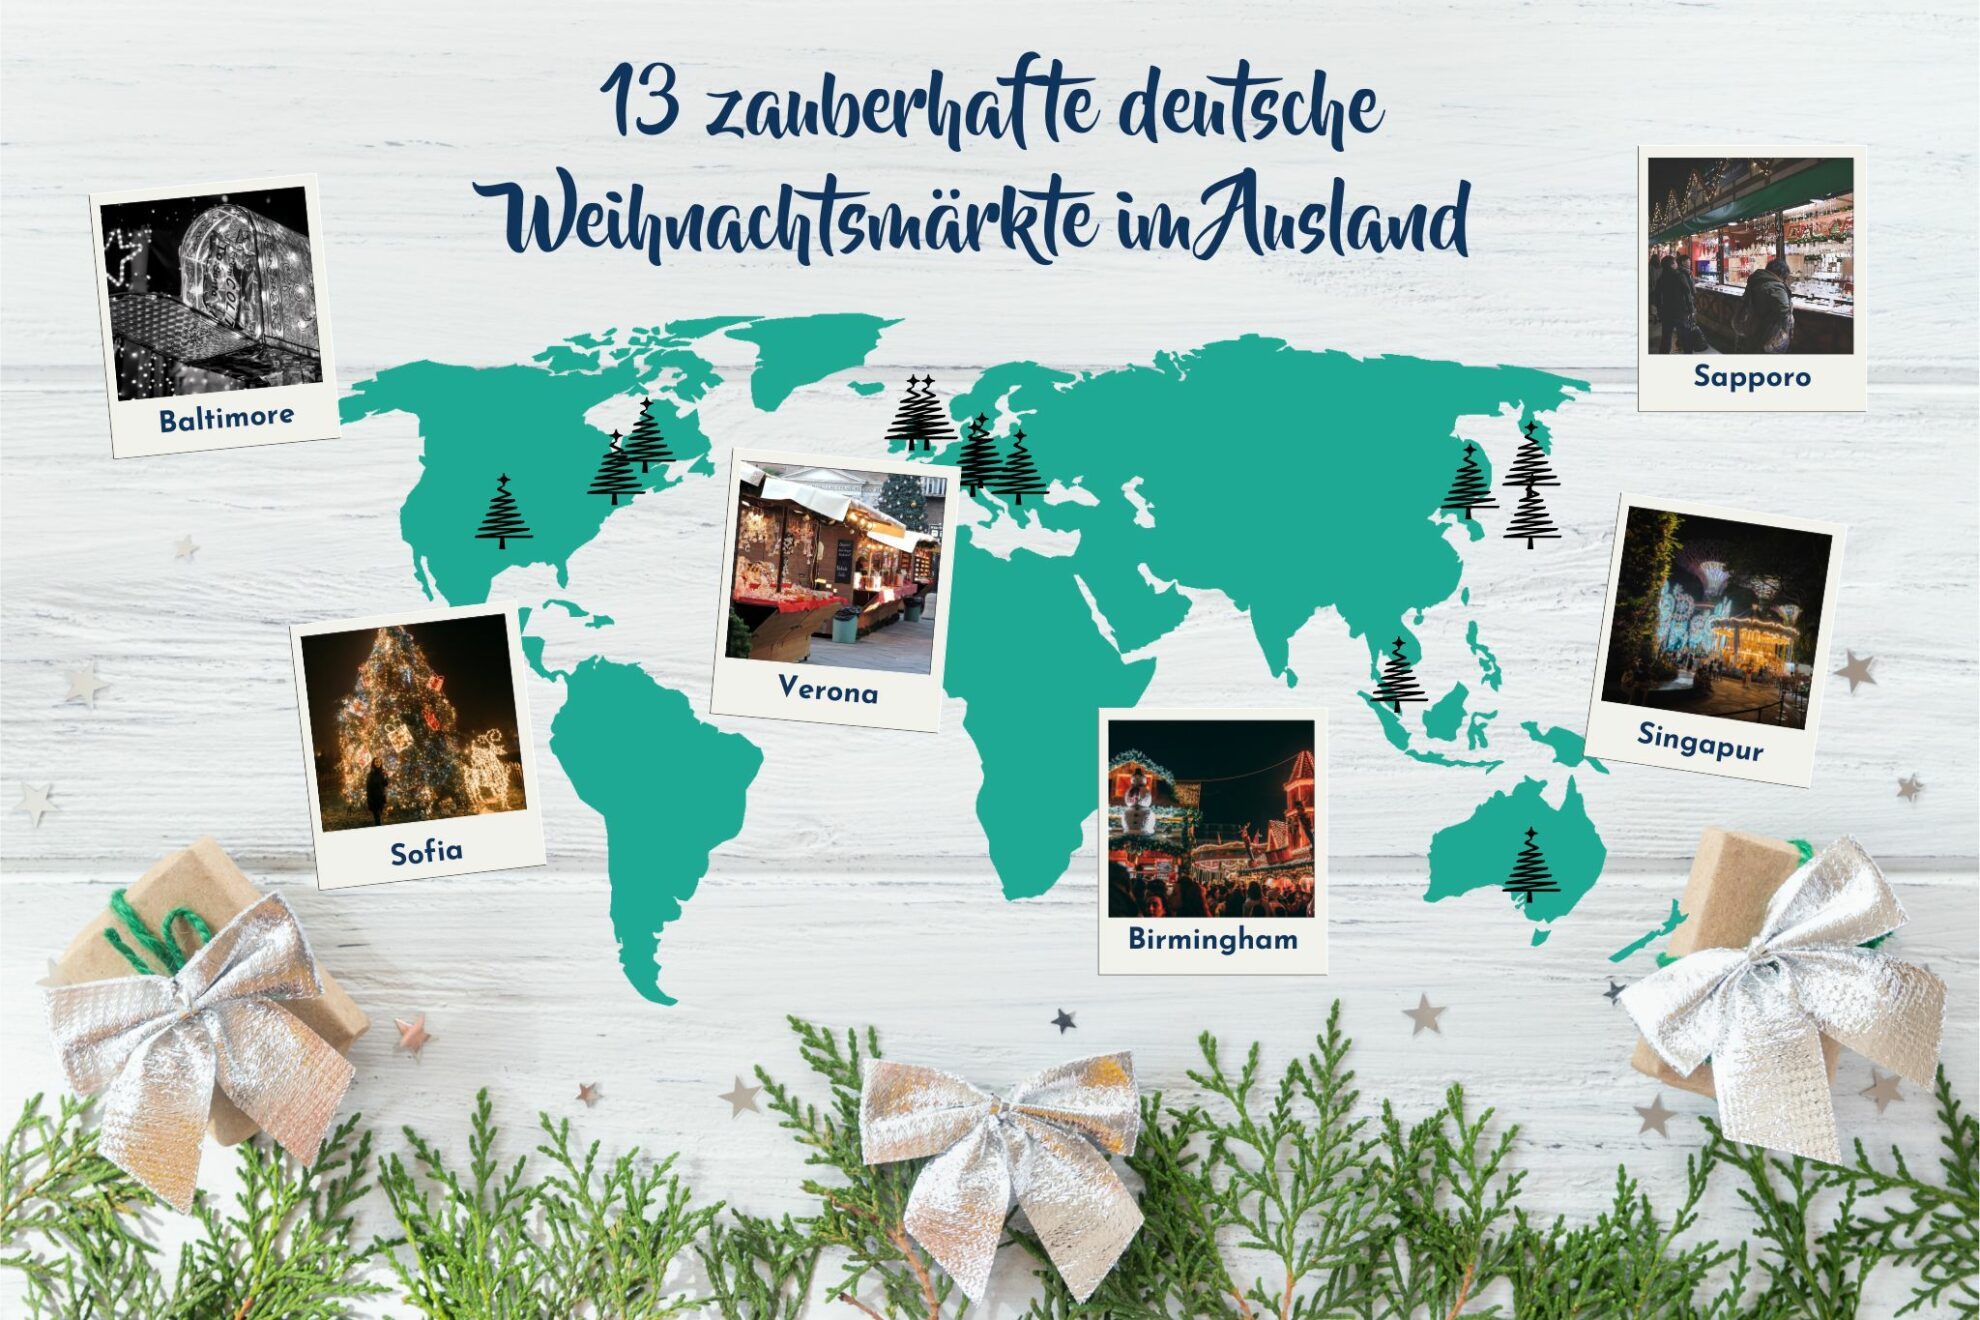 13 zauberhafte deutsche Weihnachtsmärkte im Ausland